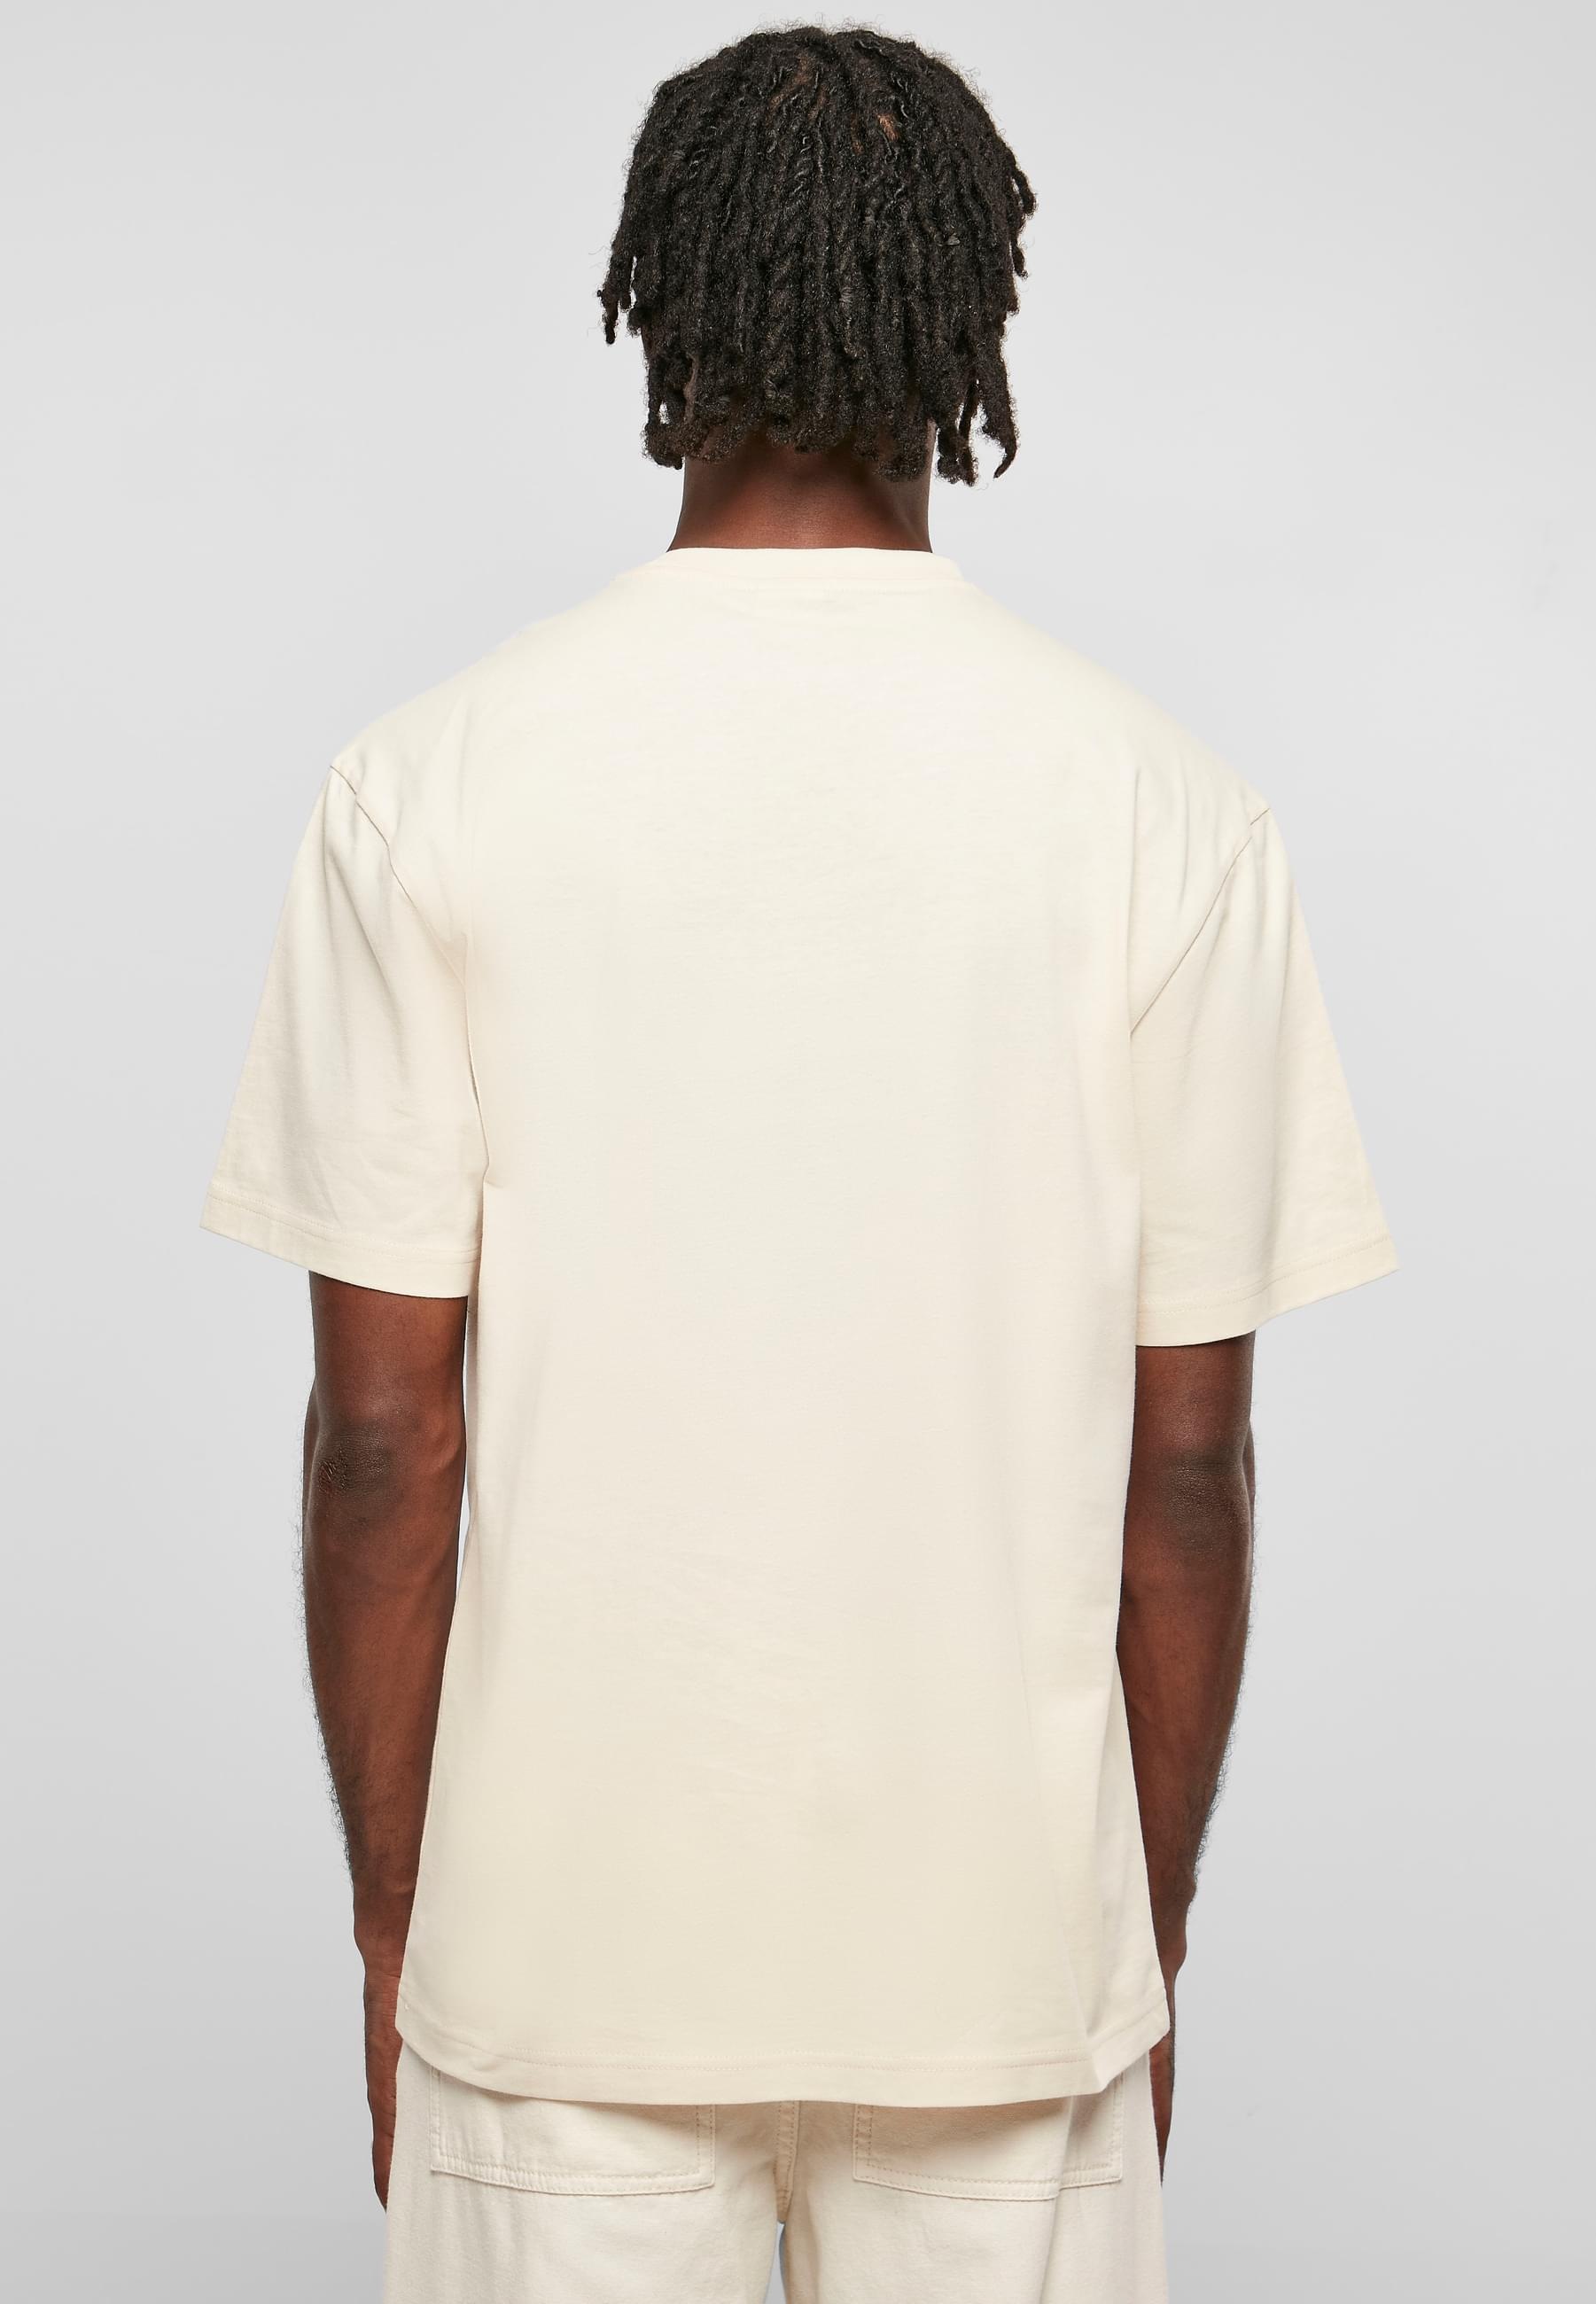 URBAN CLASSICS T-Shirt »Urban Classics Herren Tall Tee«, (1 tlg.)